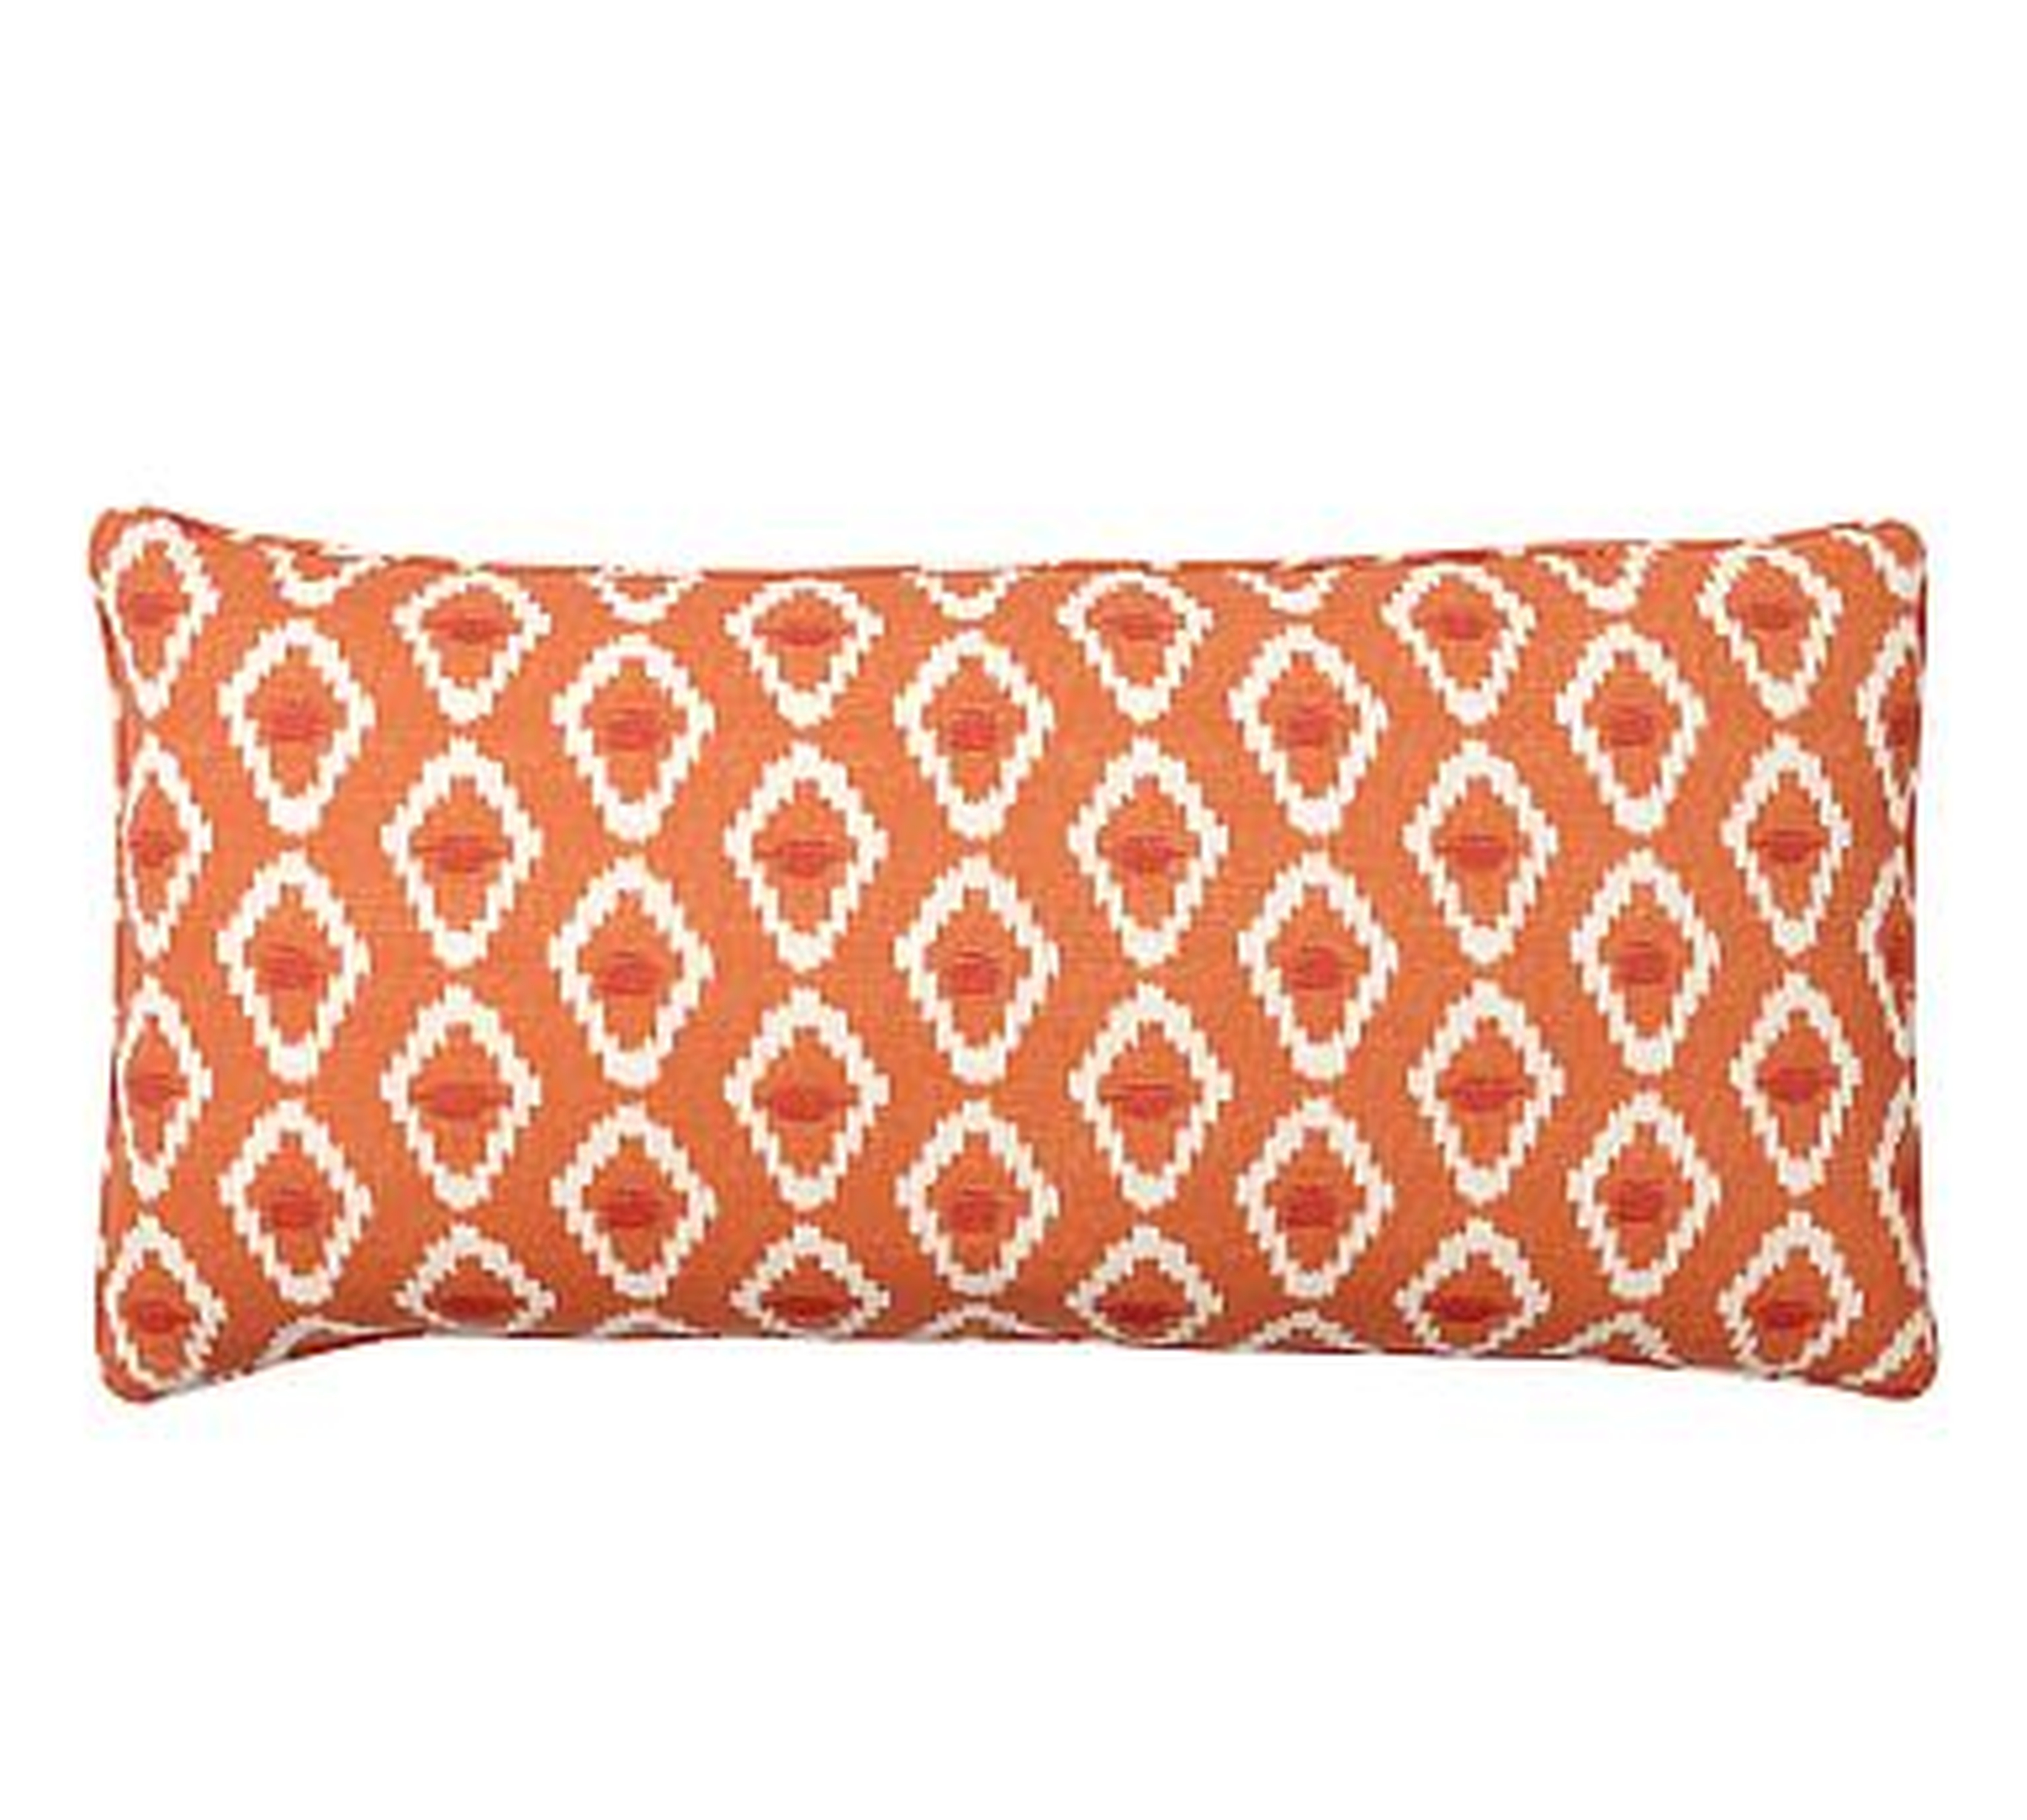 Diamond Ikat Lumbar Pillow Cover, 12 x 24", Orange - Pottery Barn